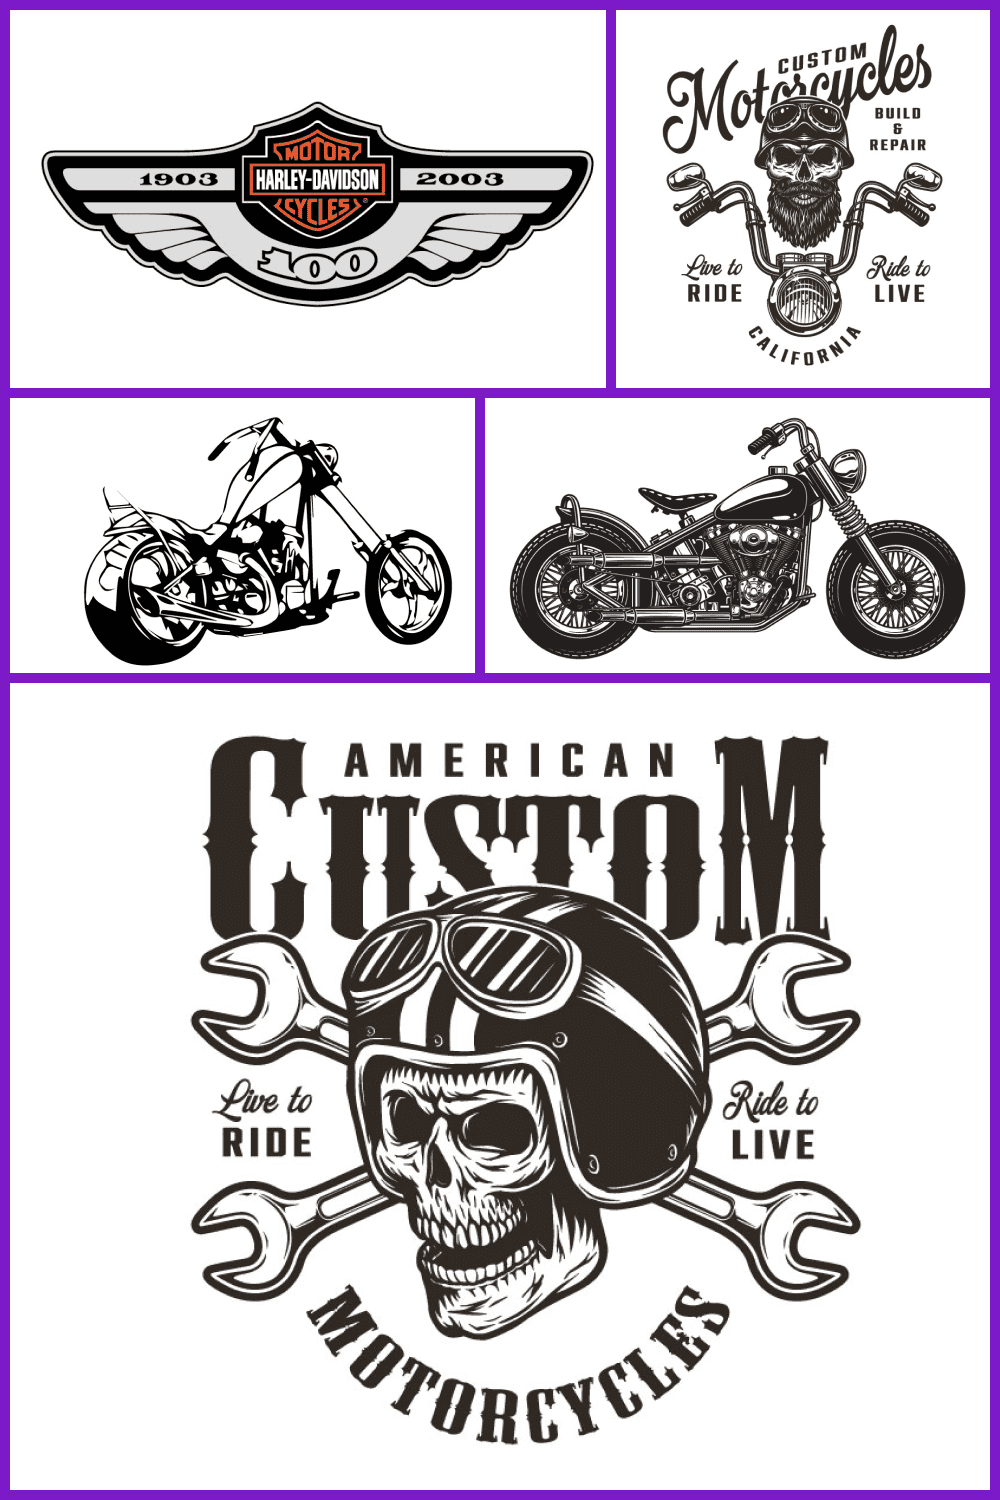 Harley Davidson SVG Image pinterest.